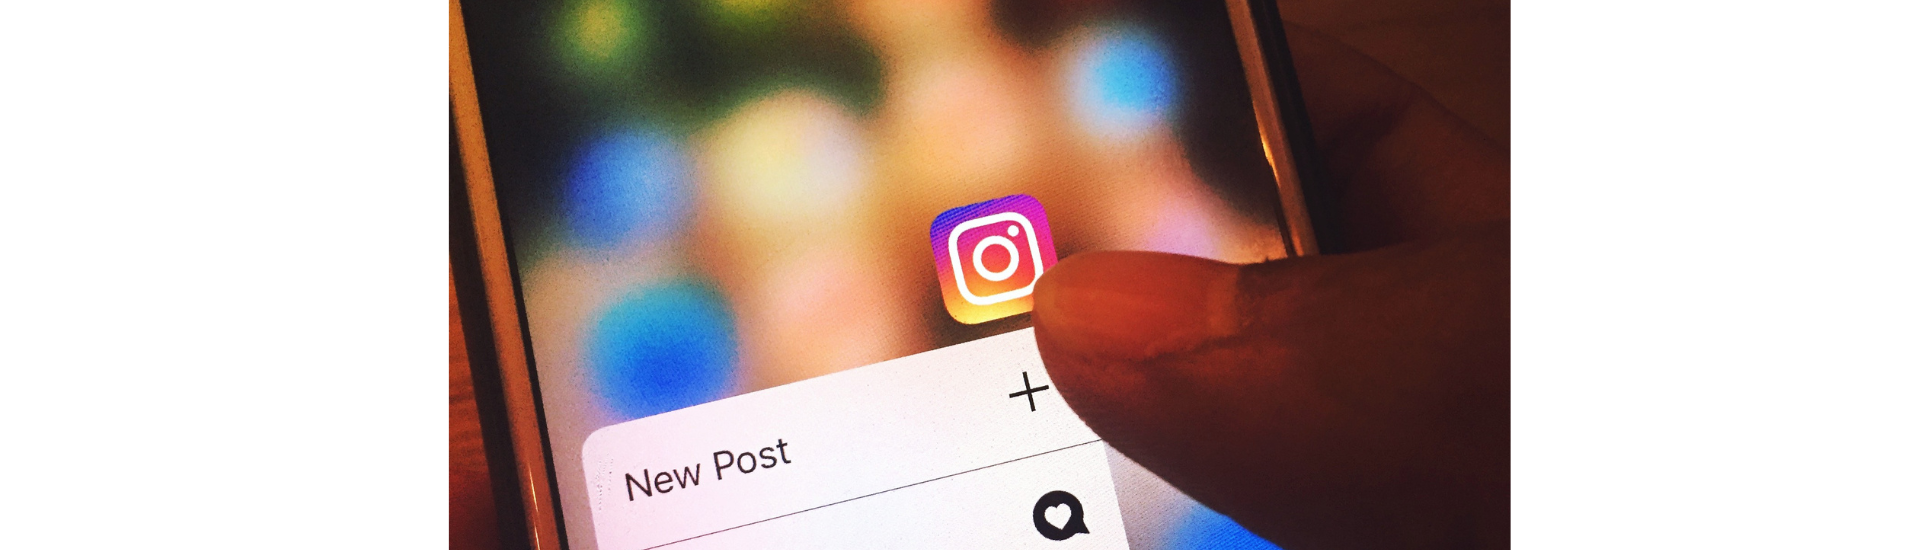 Algoritmo de Instagram: Cómo funciona y consejos para gestionar tu cuenta